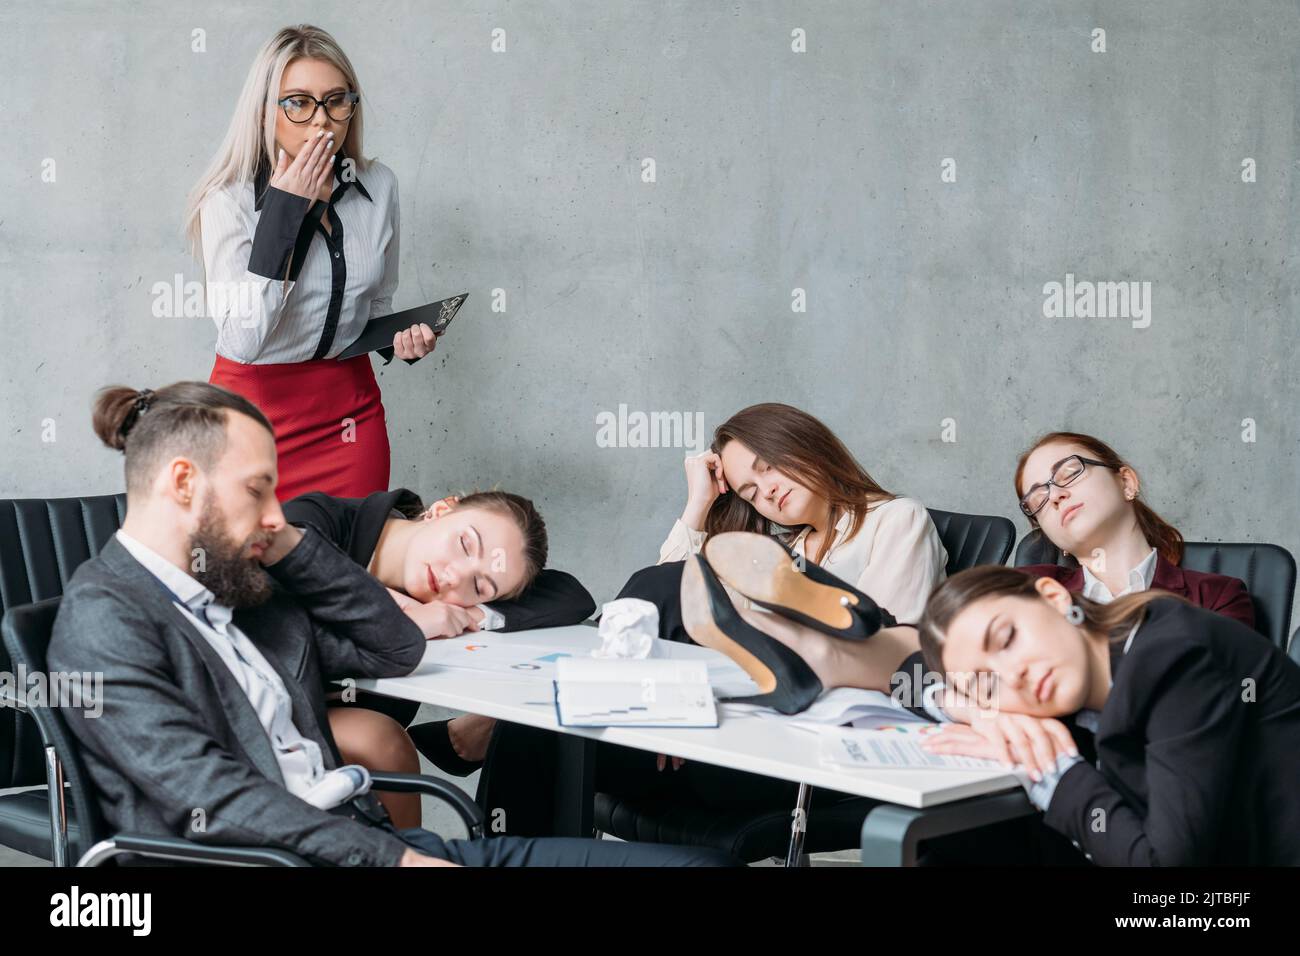 le personnel d'entreprise fatigués dorment trop Banque D'Images